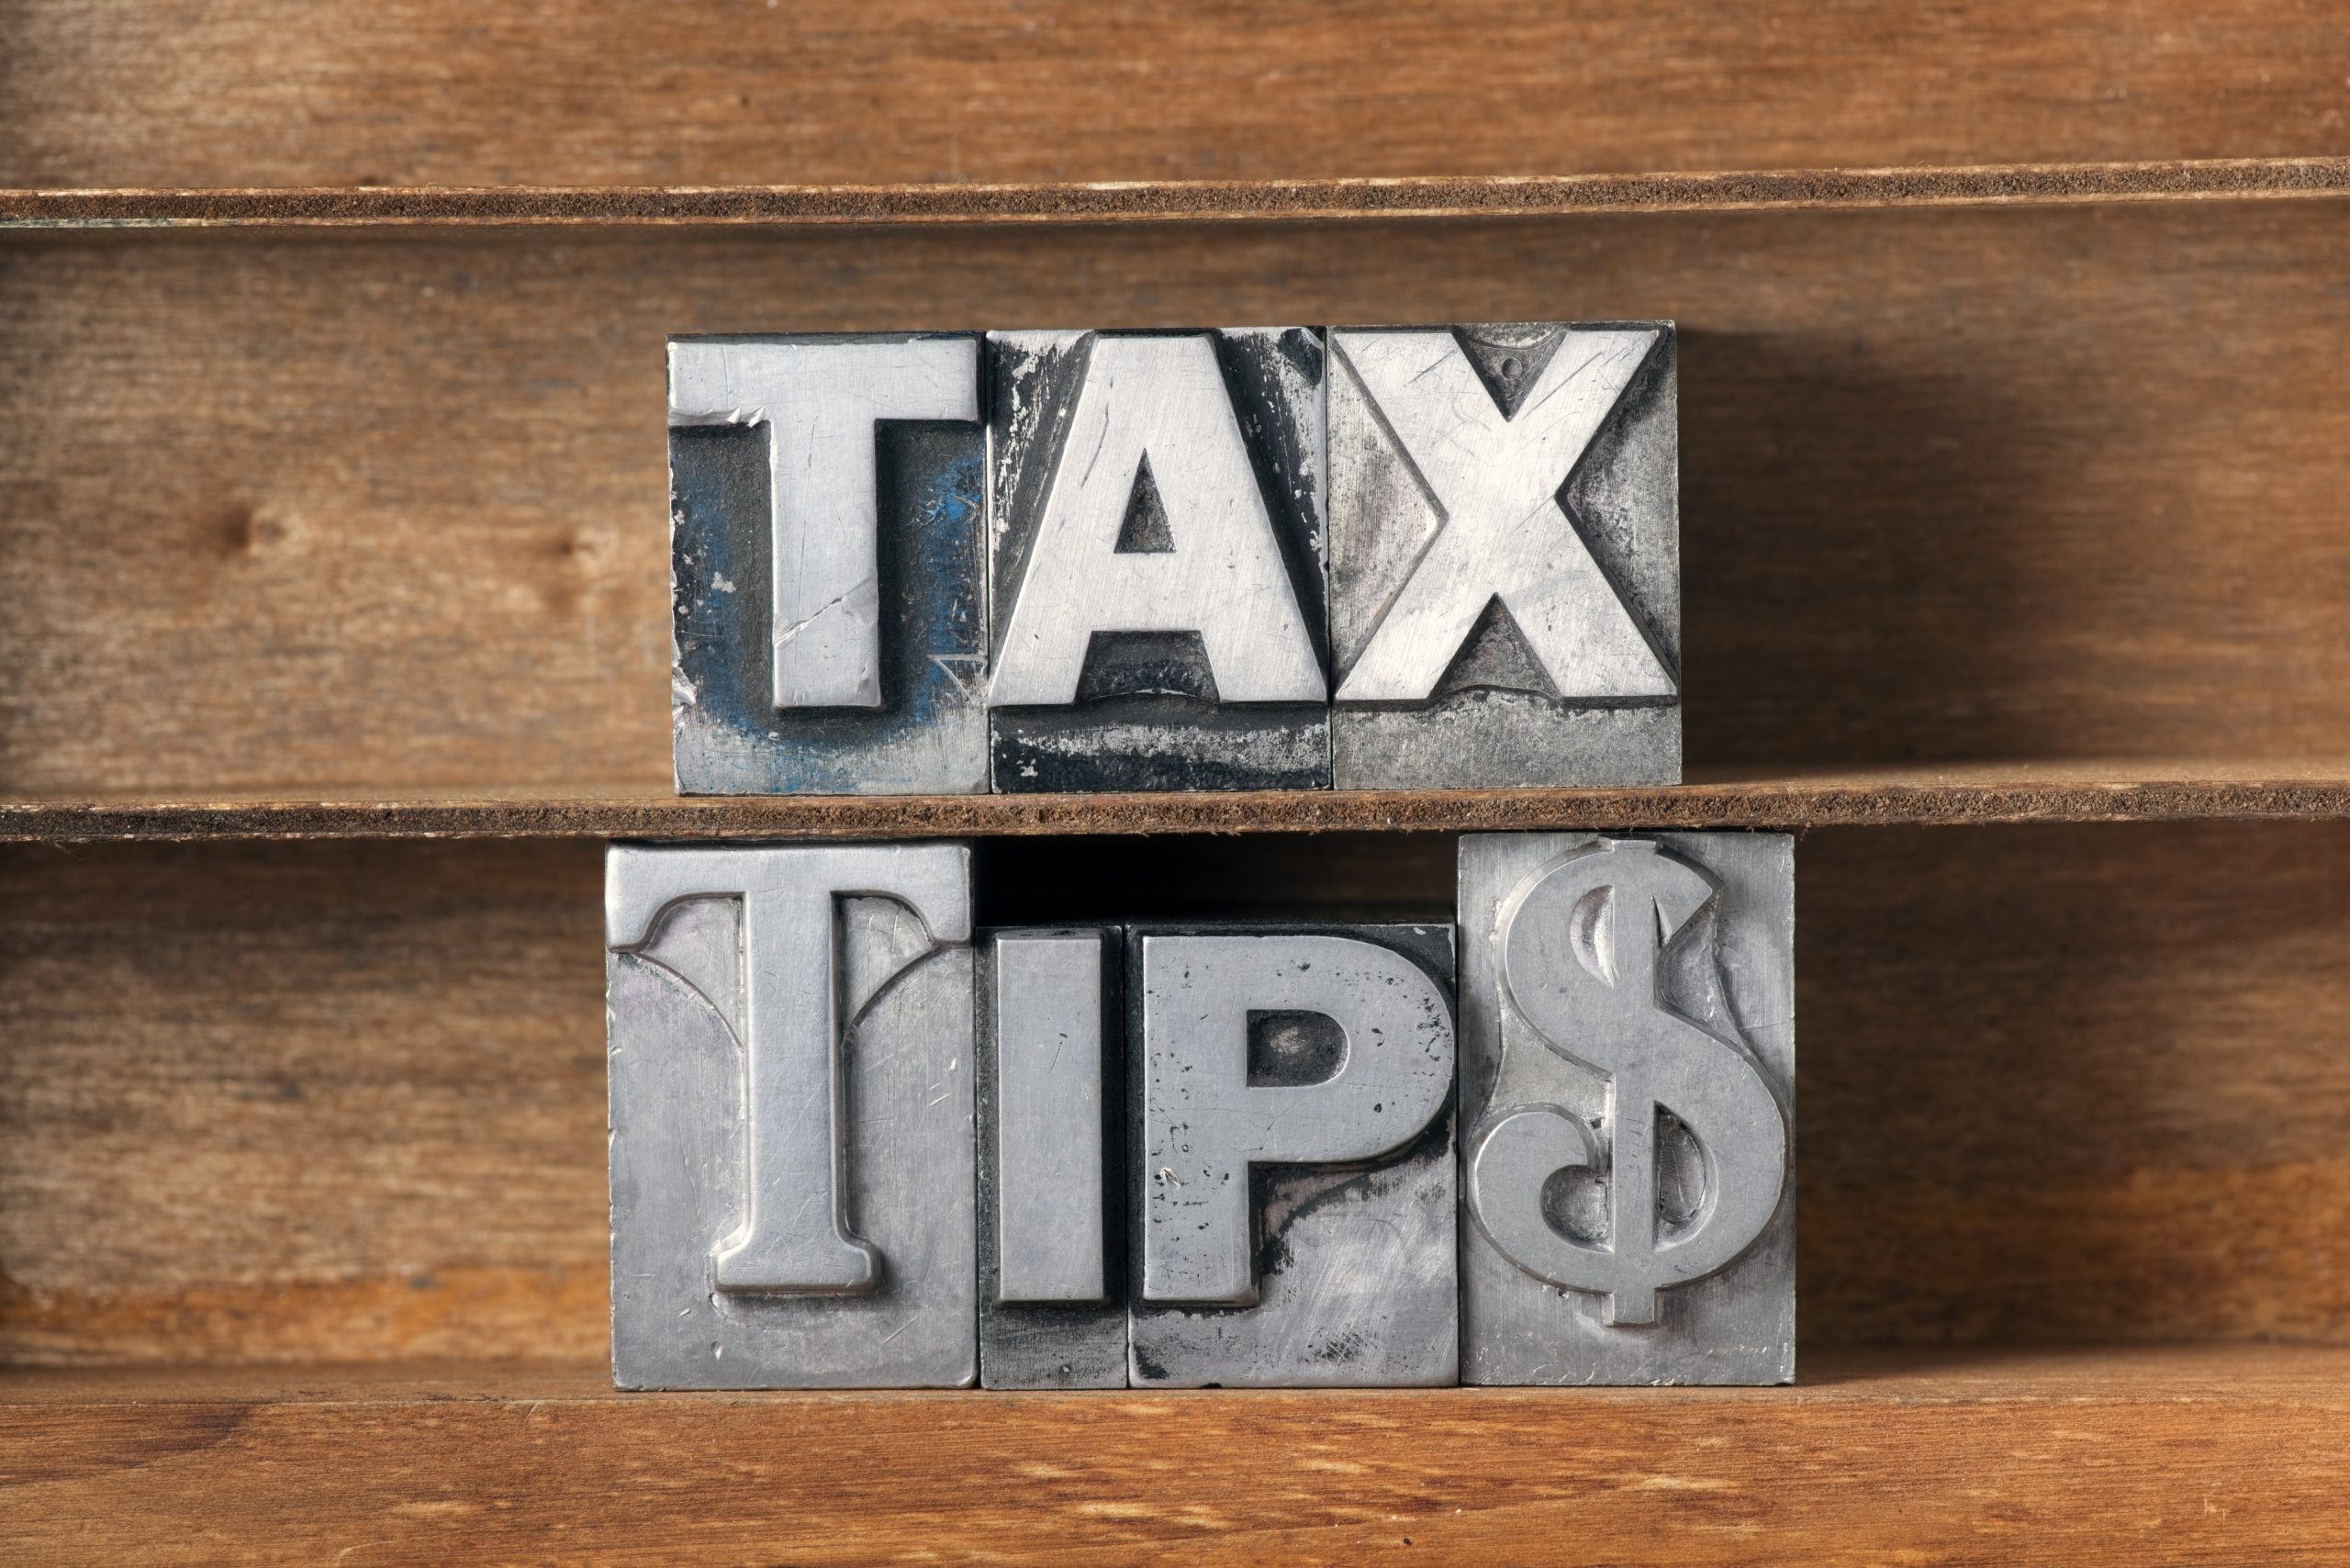 Tax tips